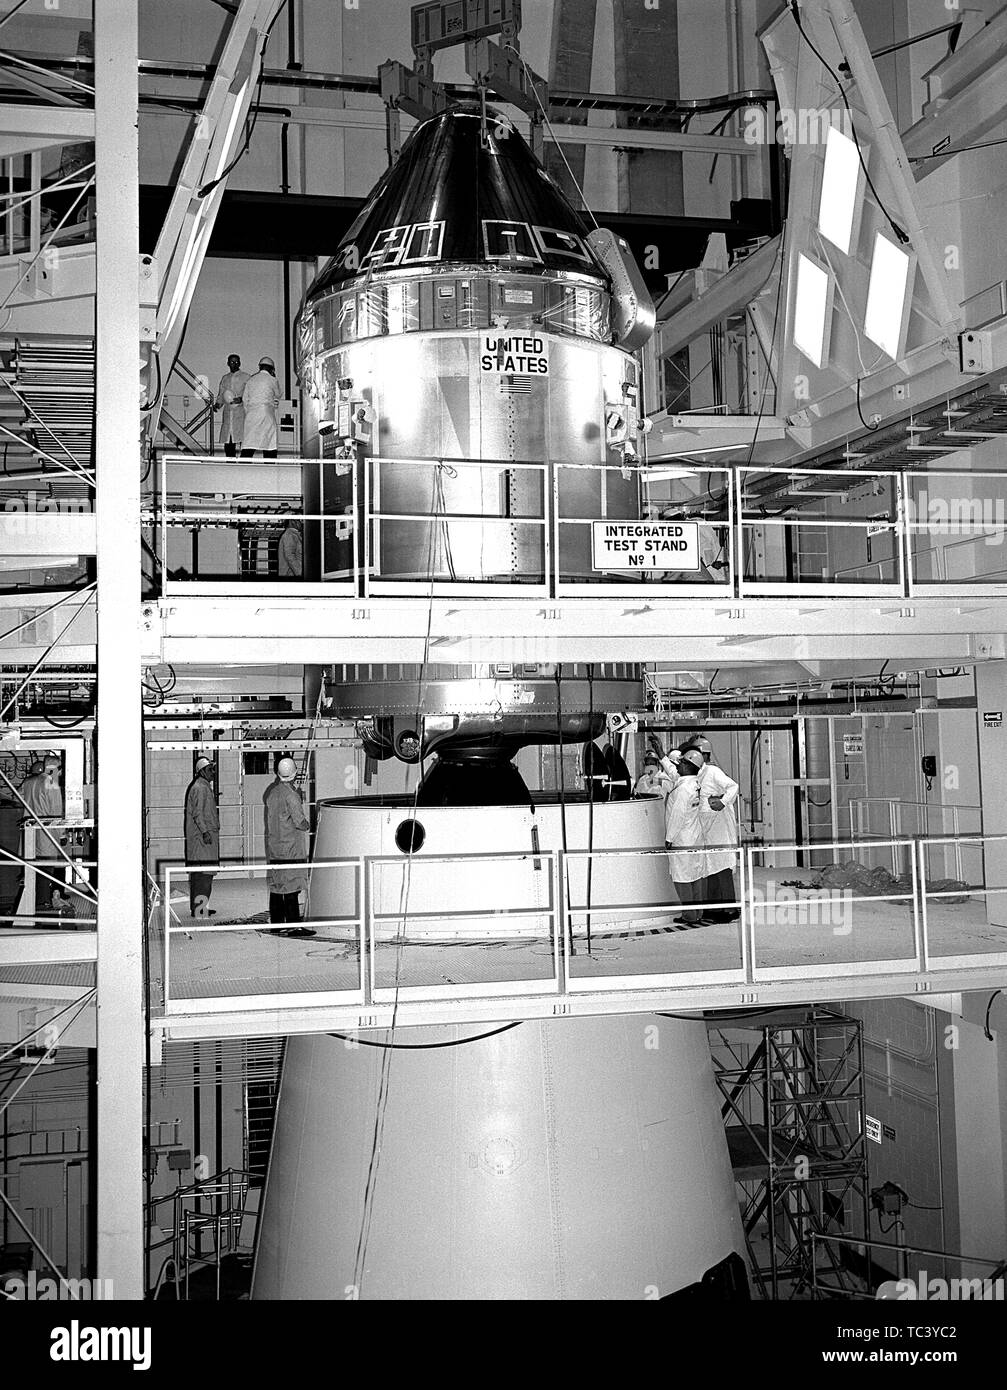 Gli ingegneri della NASA coniugate l'Apollo 11 il comando Service Module (CSM) per il Saturn V Modulo Lunare Adattatore, Aprile 11, 1969. Immagine cortesia Nazionale Aeronautica e Spaziale Administration (NASA). () Foto Stock